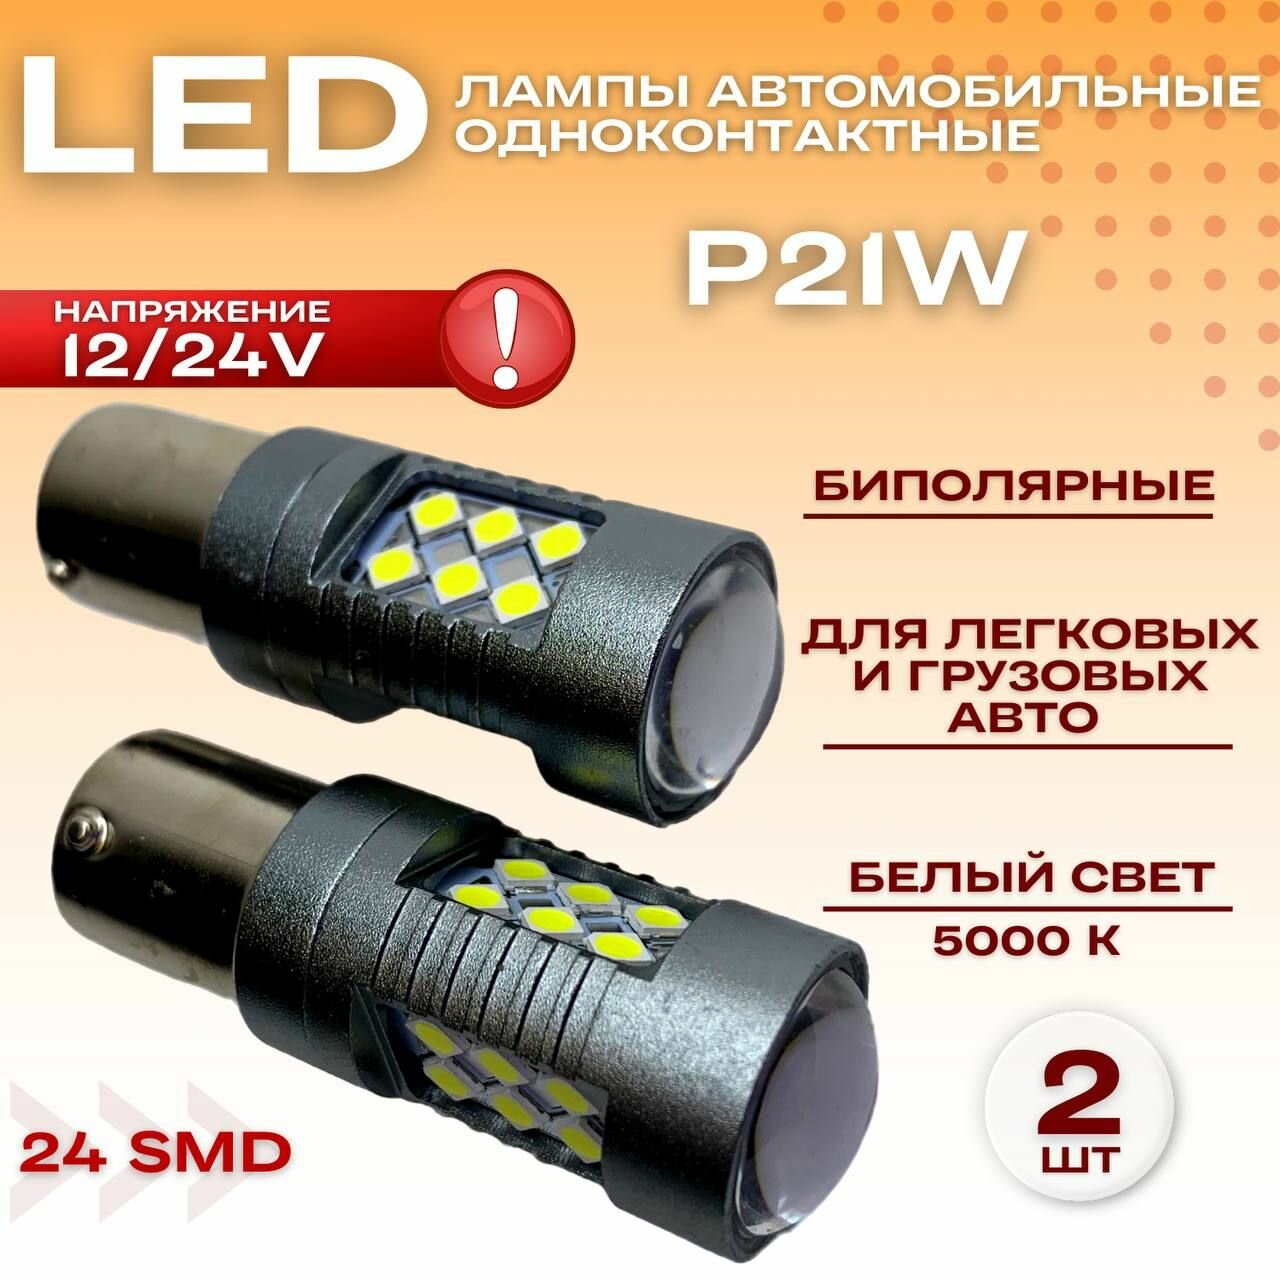 Светодиодные лампы 12/24V P21W 24SMD LED биполярные одноконтактные для легковых и грузовых авто,2 шт